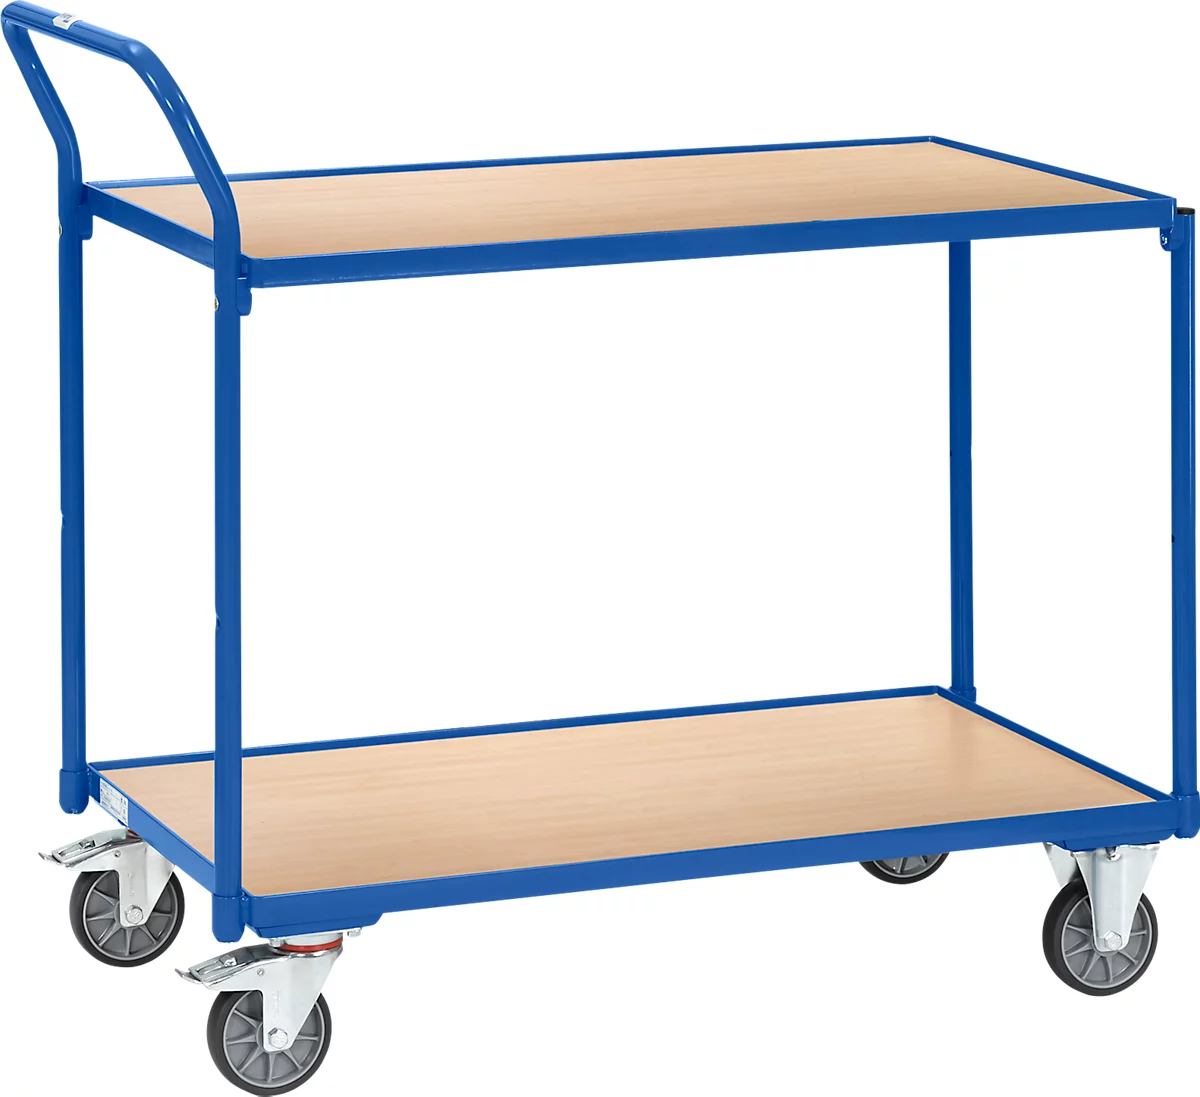 Carro de mesa Fetra , 2 estantes, L 850 x A 500 mm, hasta 300 kg, 2 asas de empuje, ruedas giratorias y fijas, madera y acero, azul brillante RAL 5007